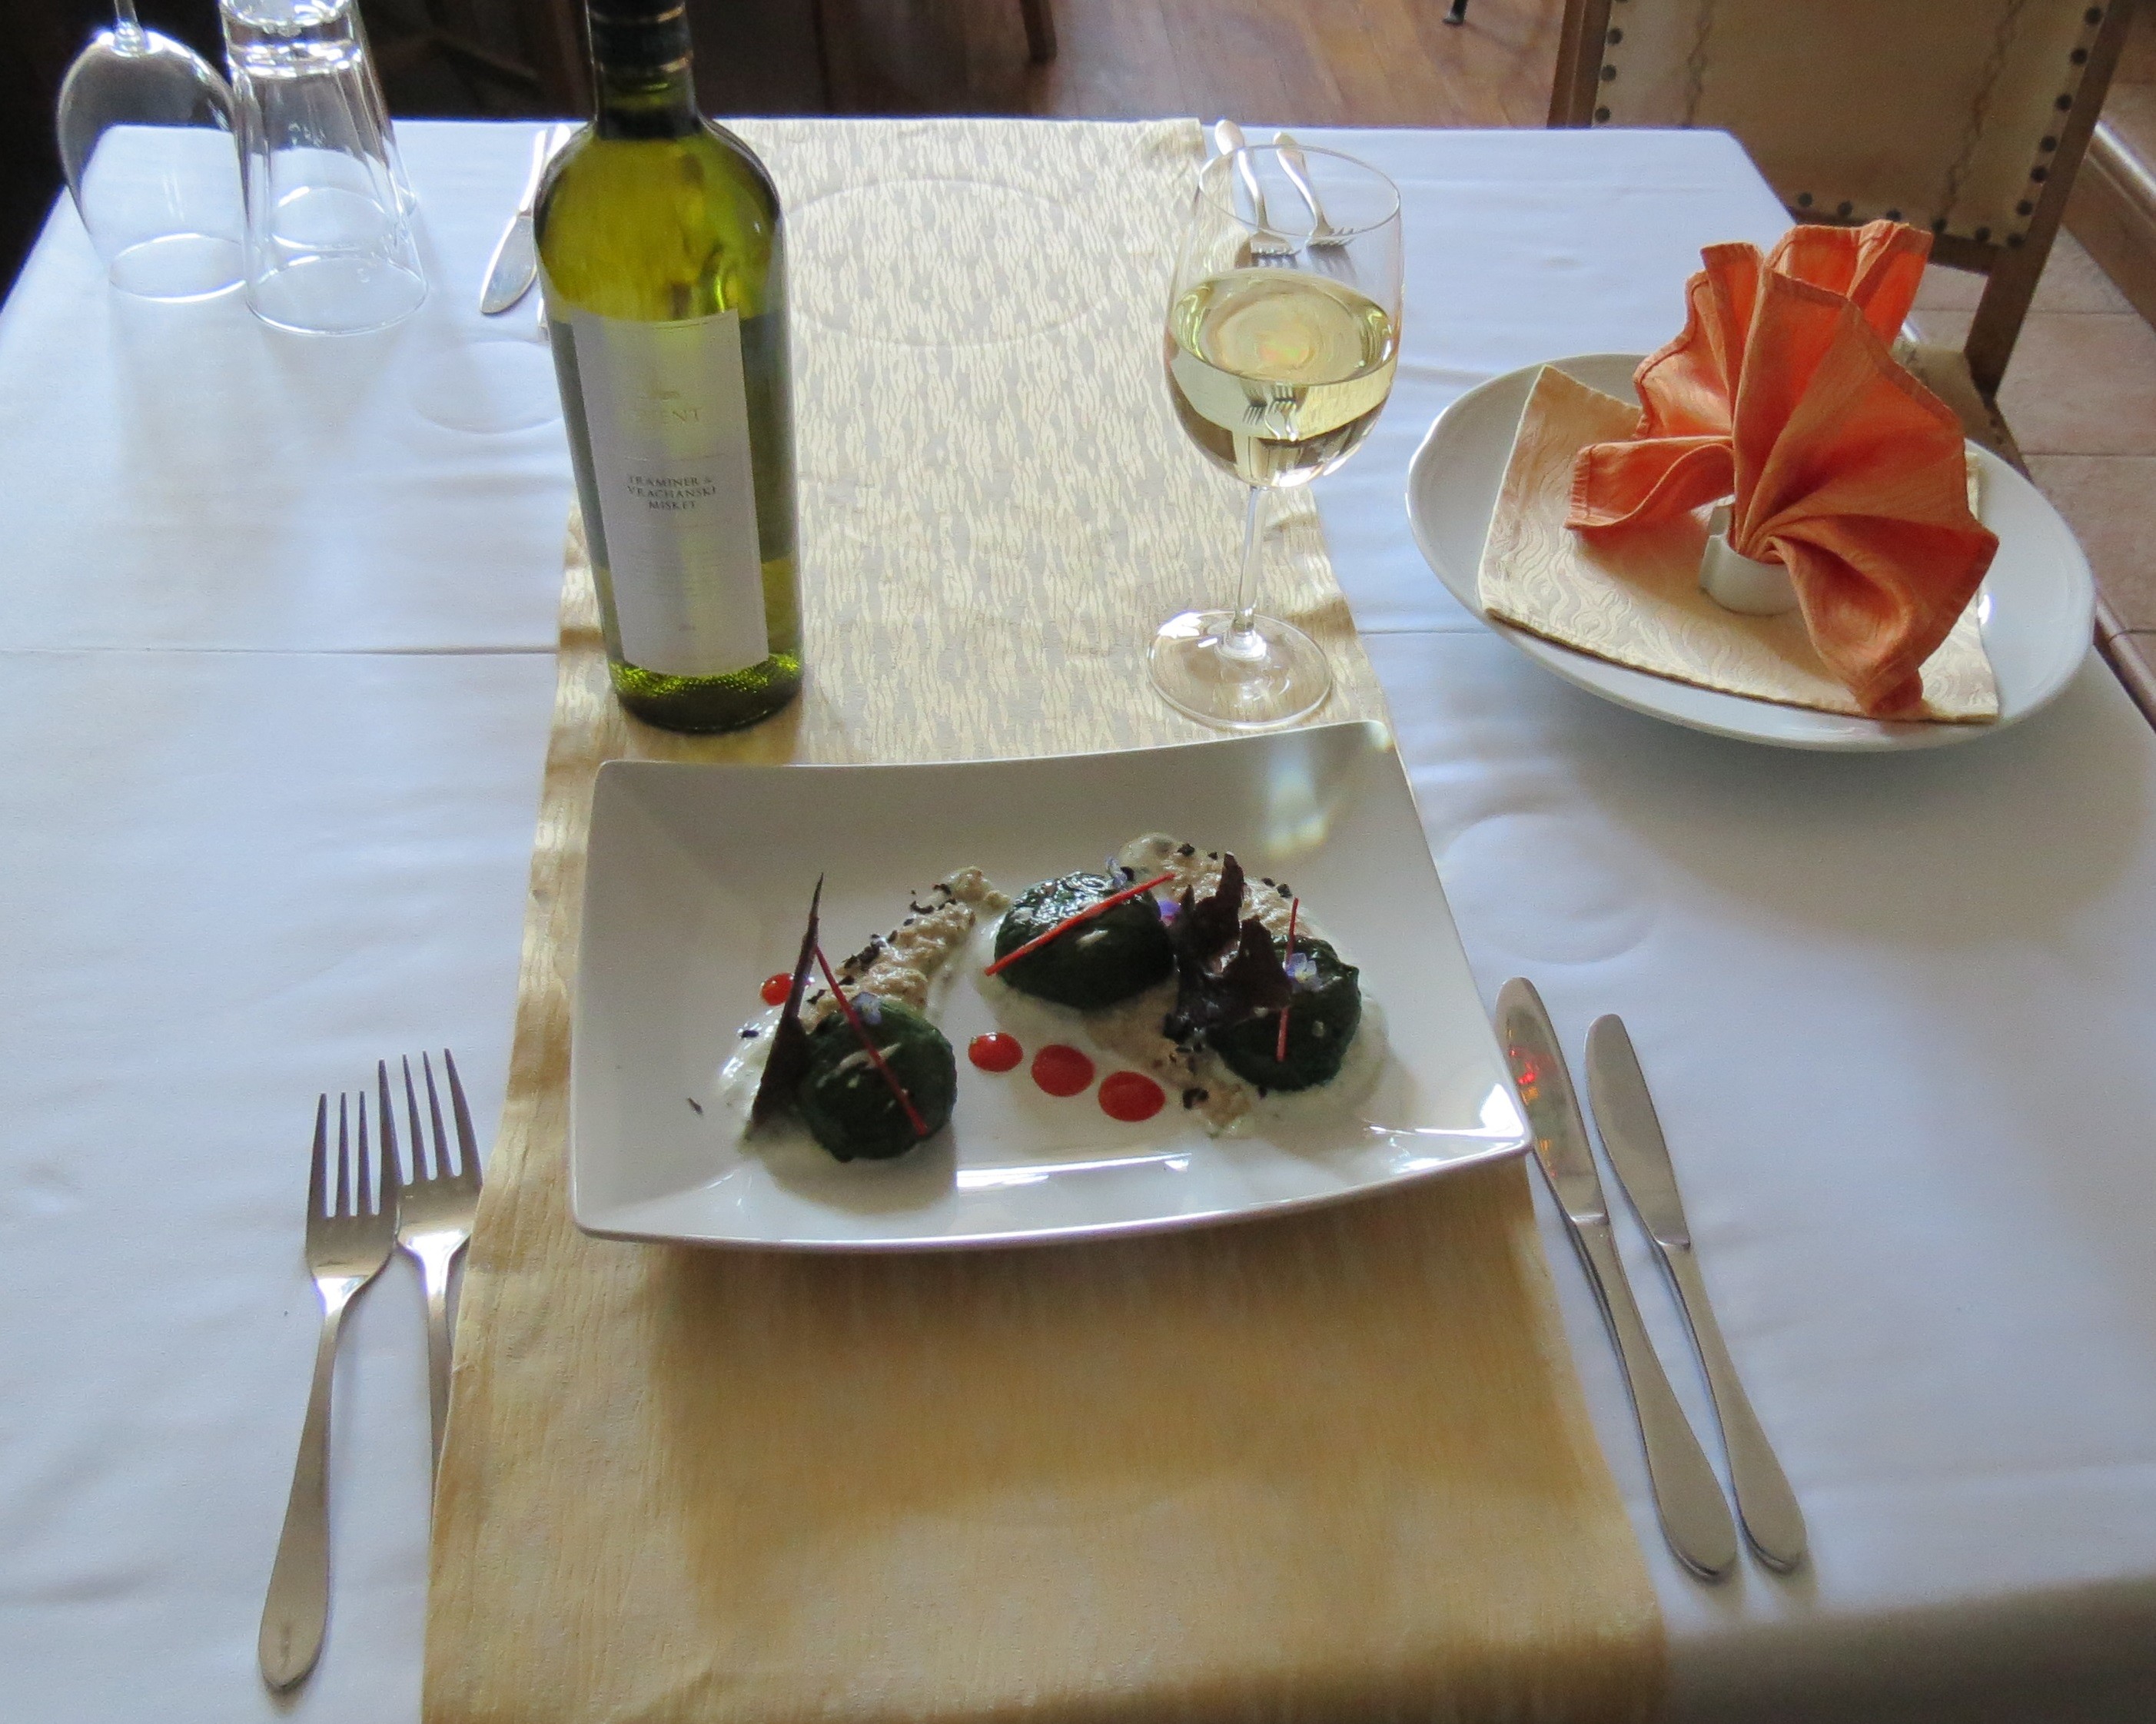   Ресторант `ЛЕВЕНТА` представя новата винена реколта 2016 г. на `Винарска къща Русе.    